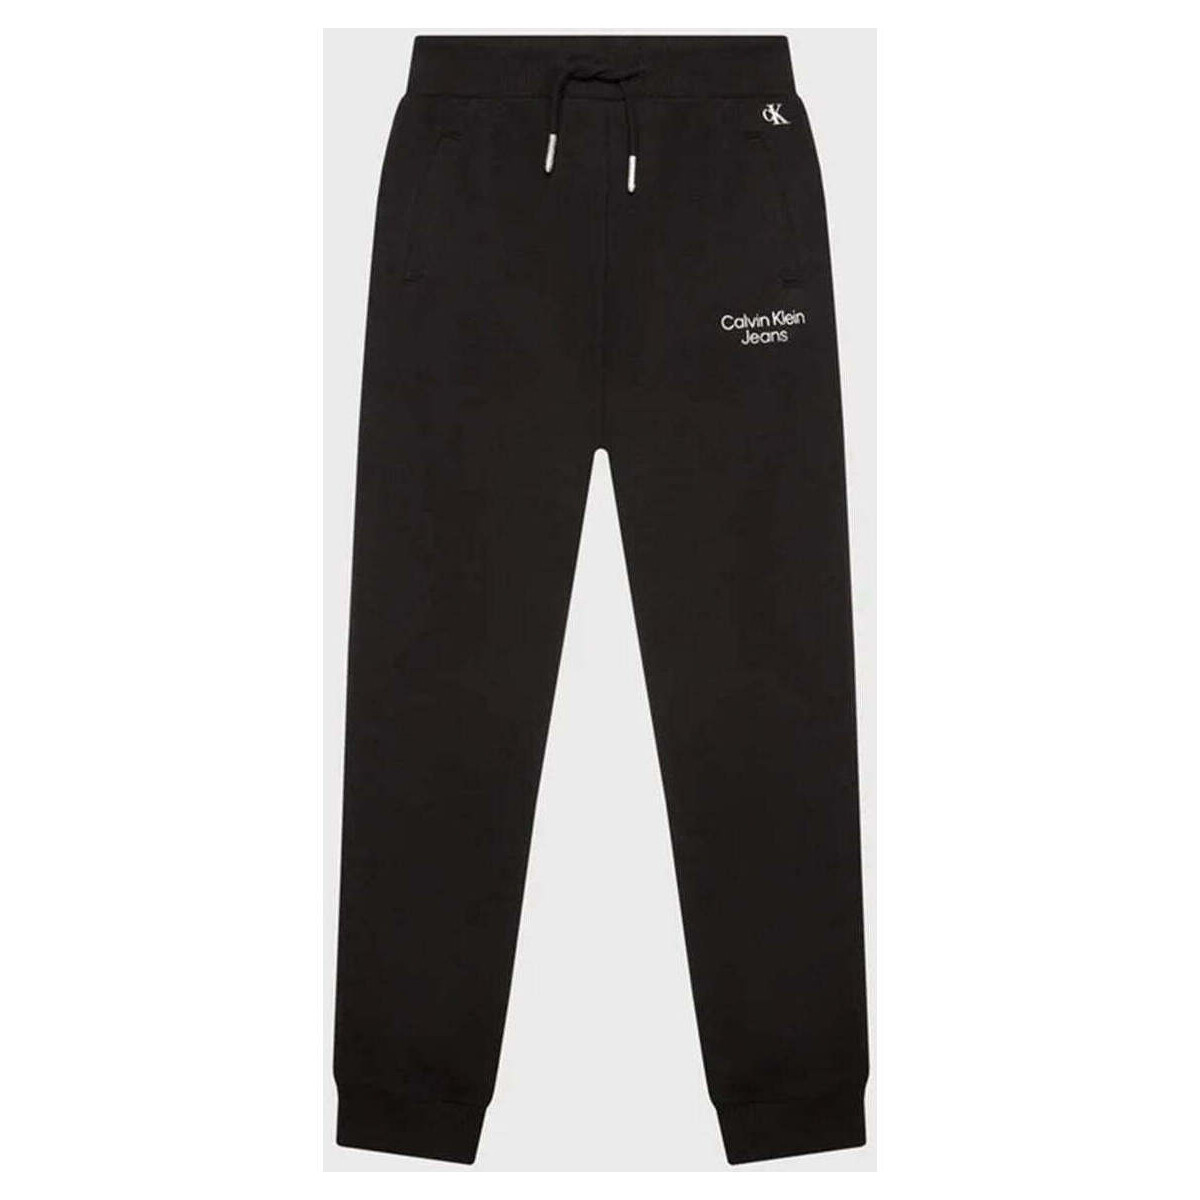 Vêtements Garçon Pantalons de survêtement Calvin Klein Jeans  Noir